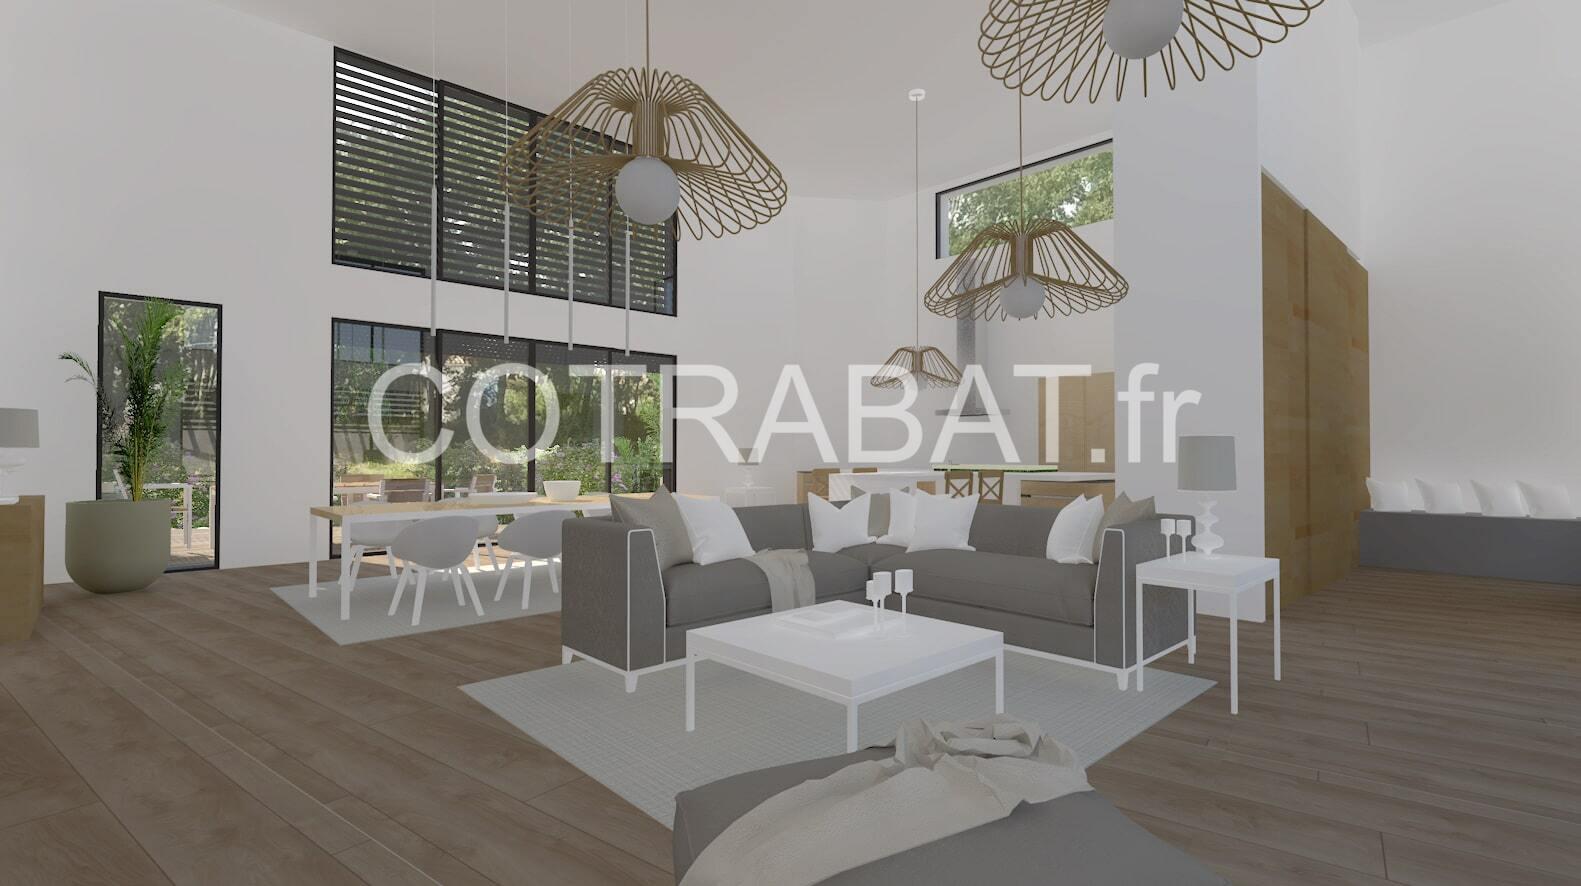 Plan 3D villa Bouliac